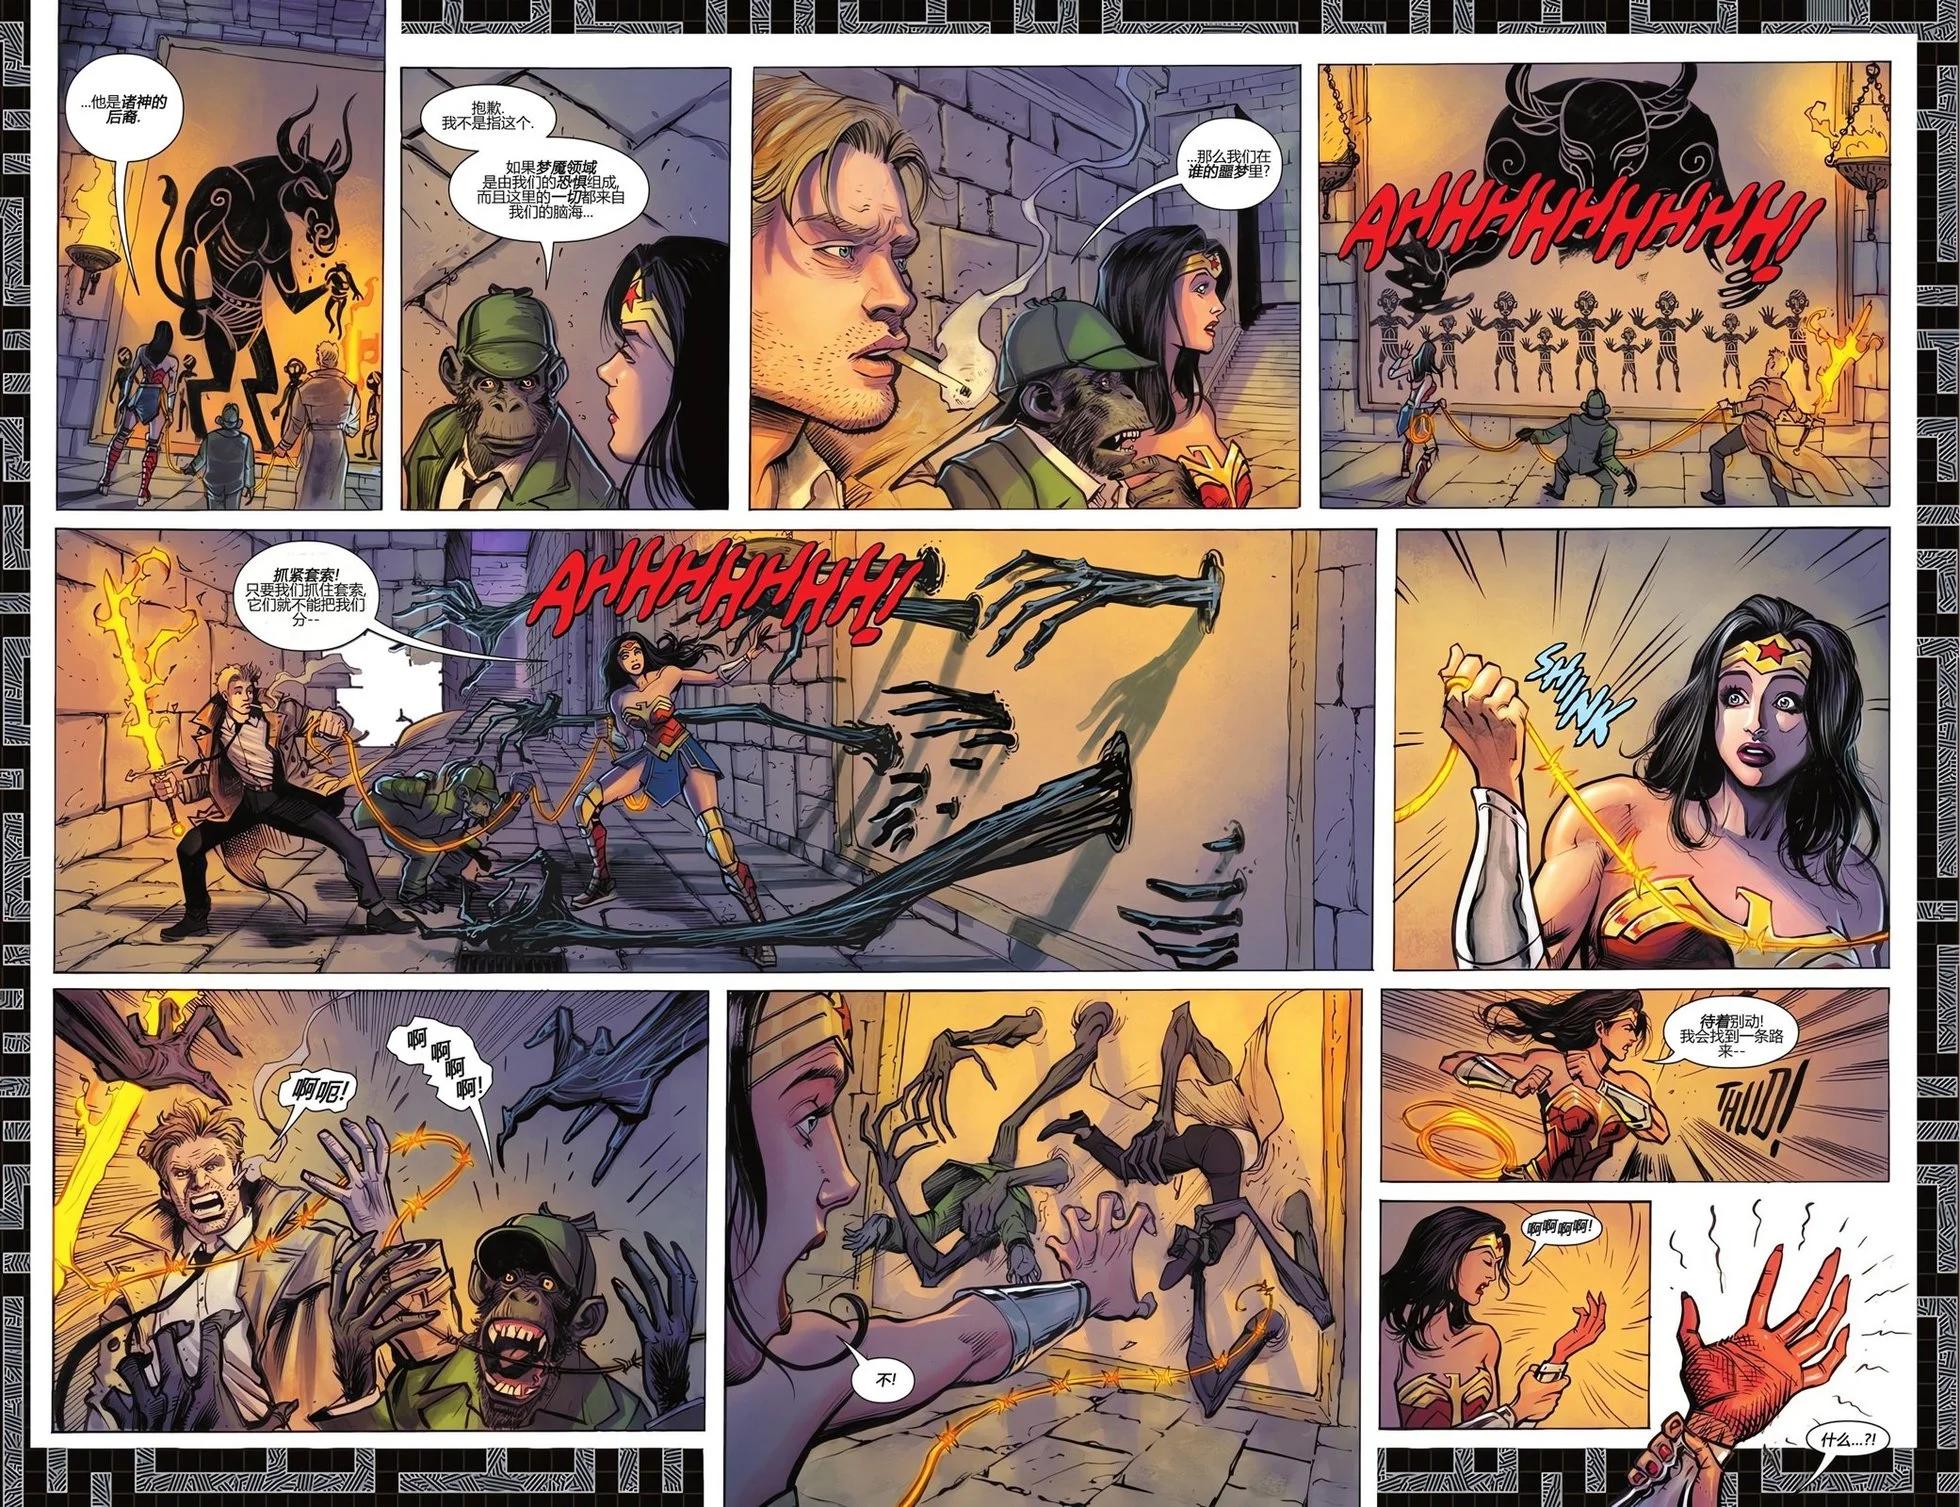 騎士驚魂 - 神奇女俠#1 - 6